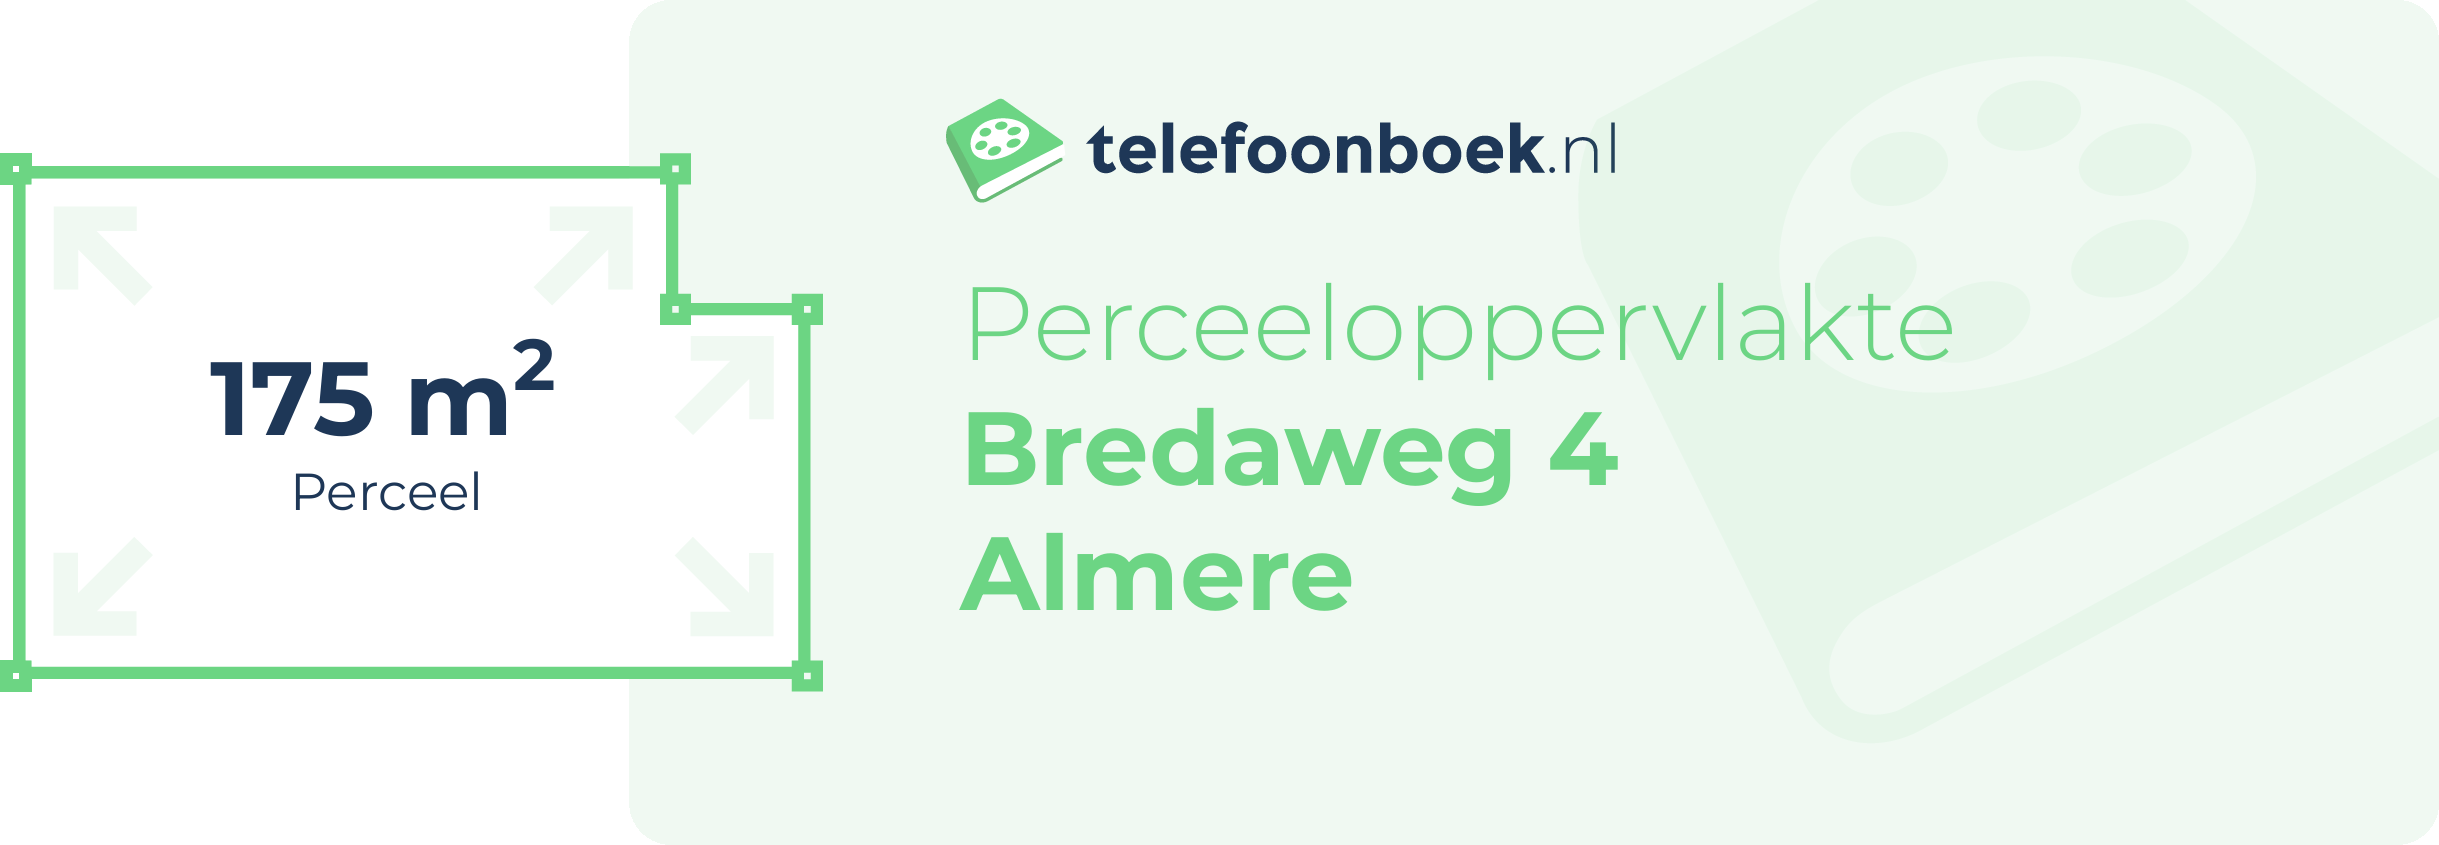 Perceeloppervlakte Bredaweg 4 Almere